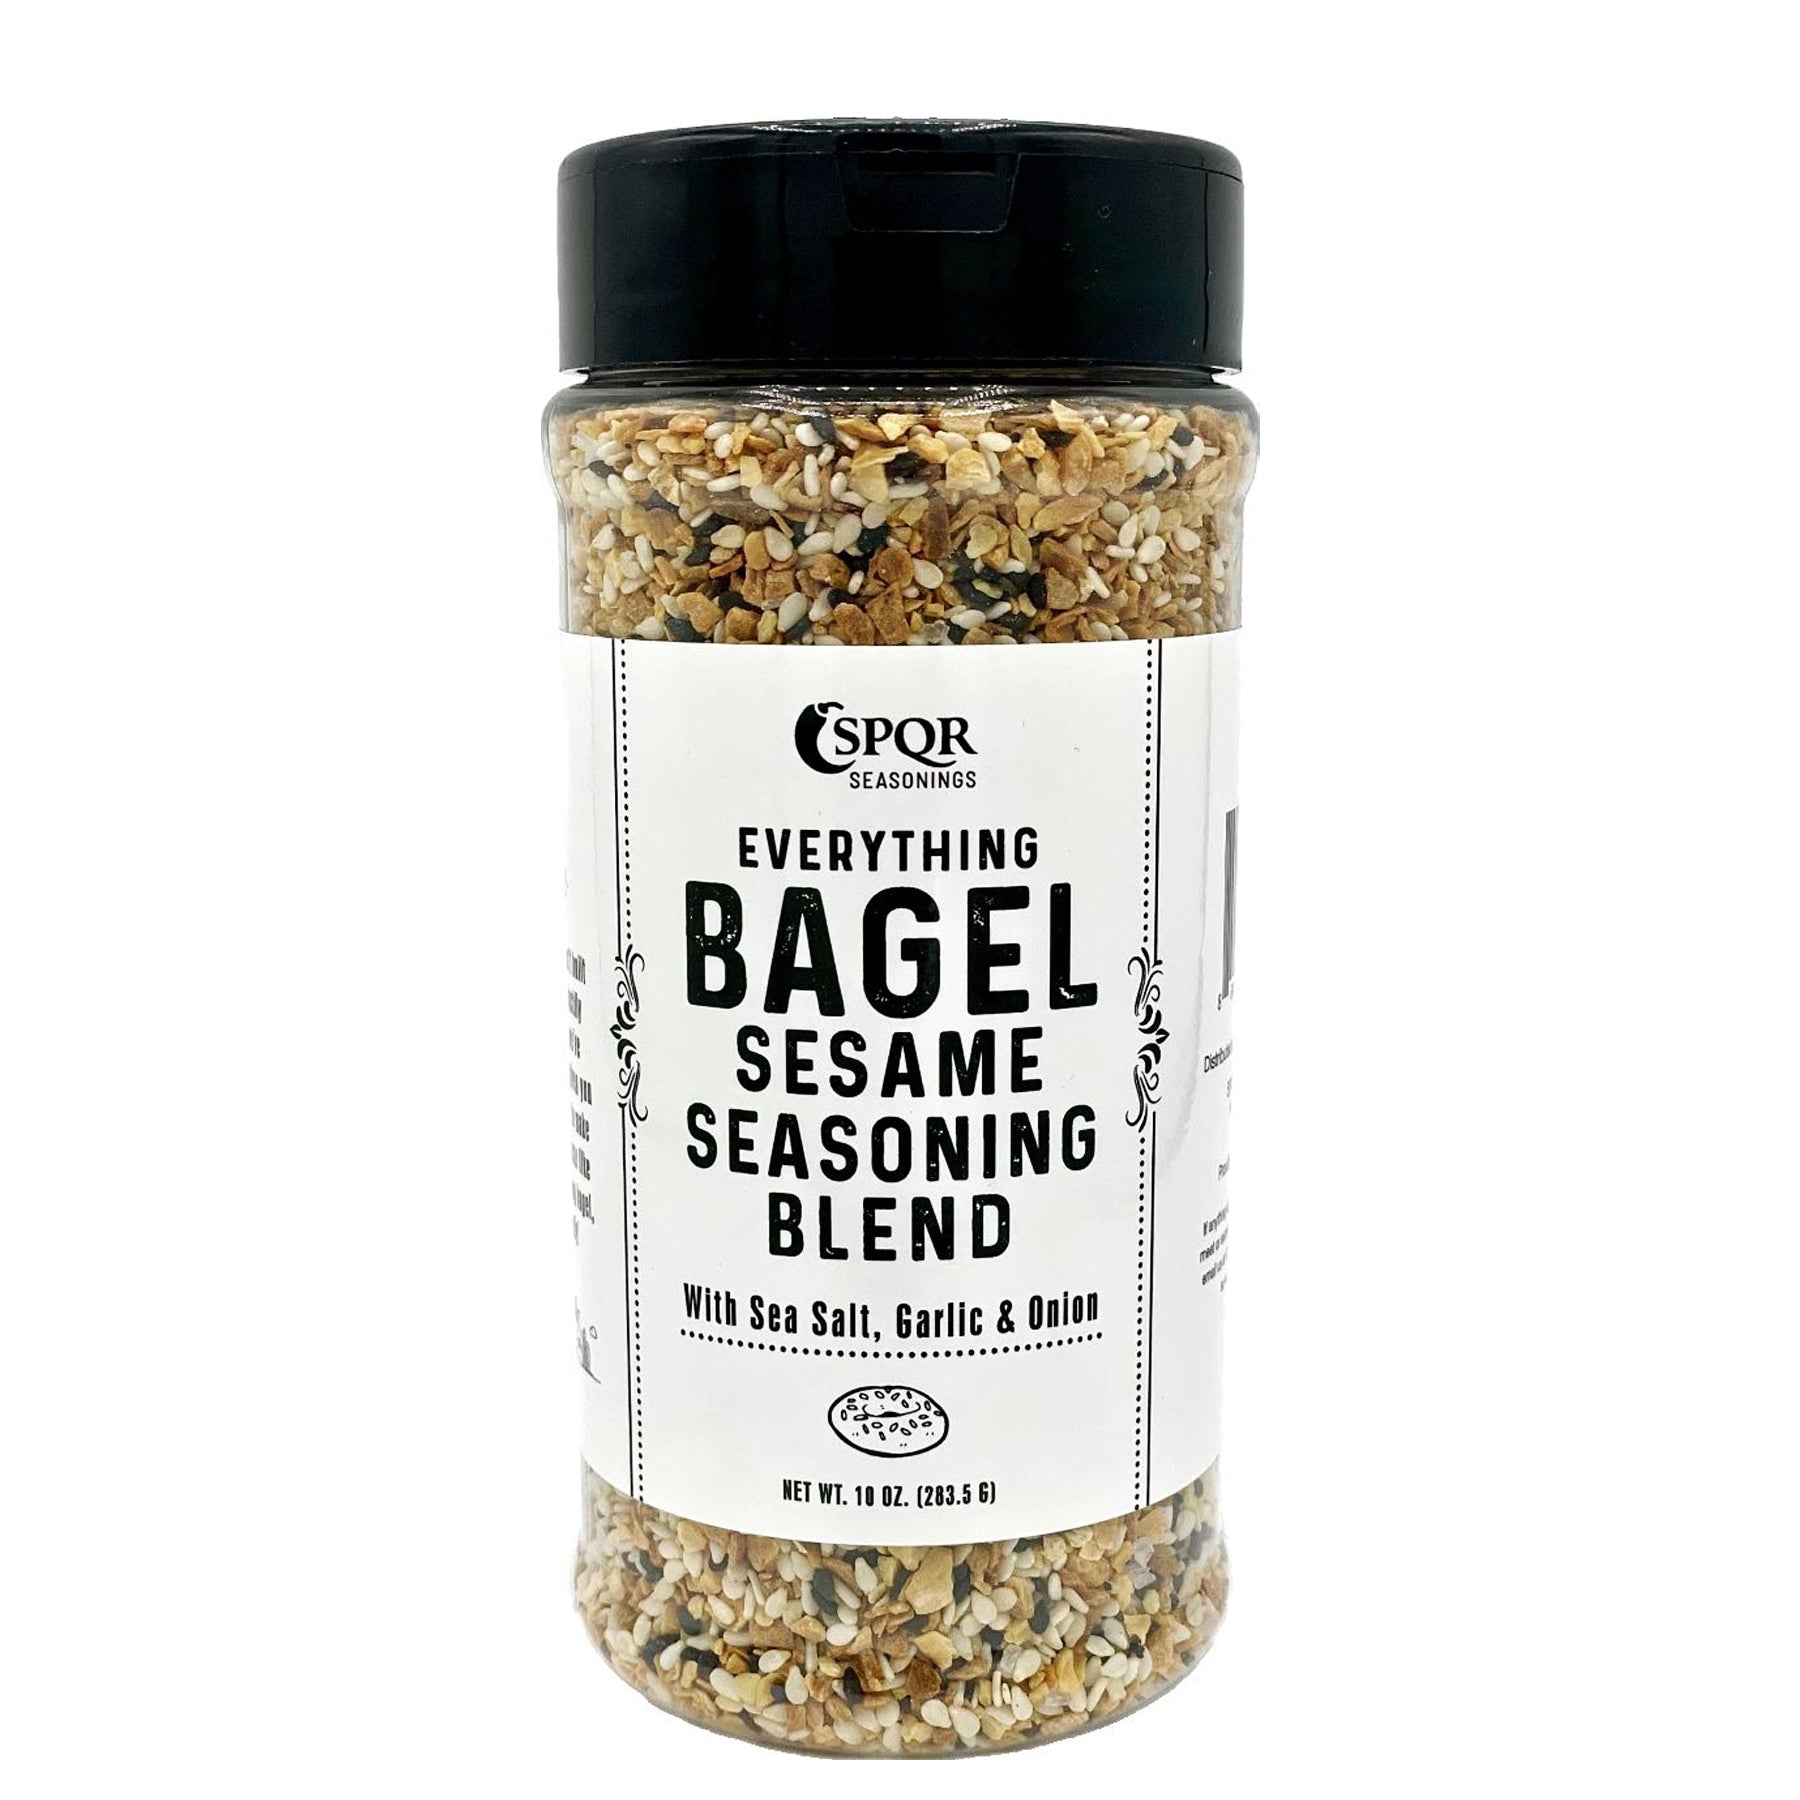 SPQR Everything Bagel Seasoning Blend Original